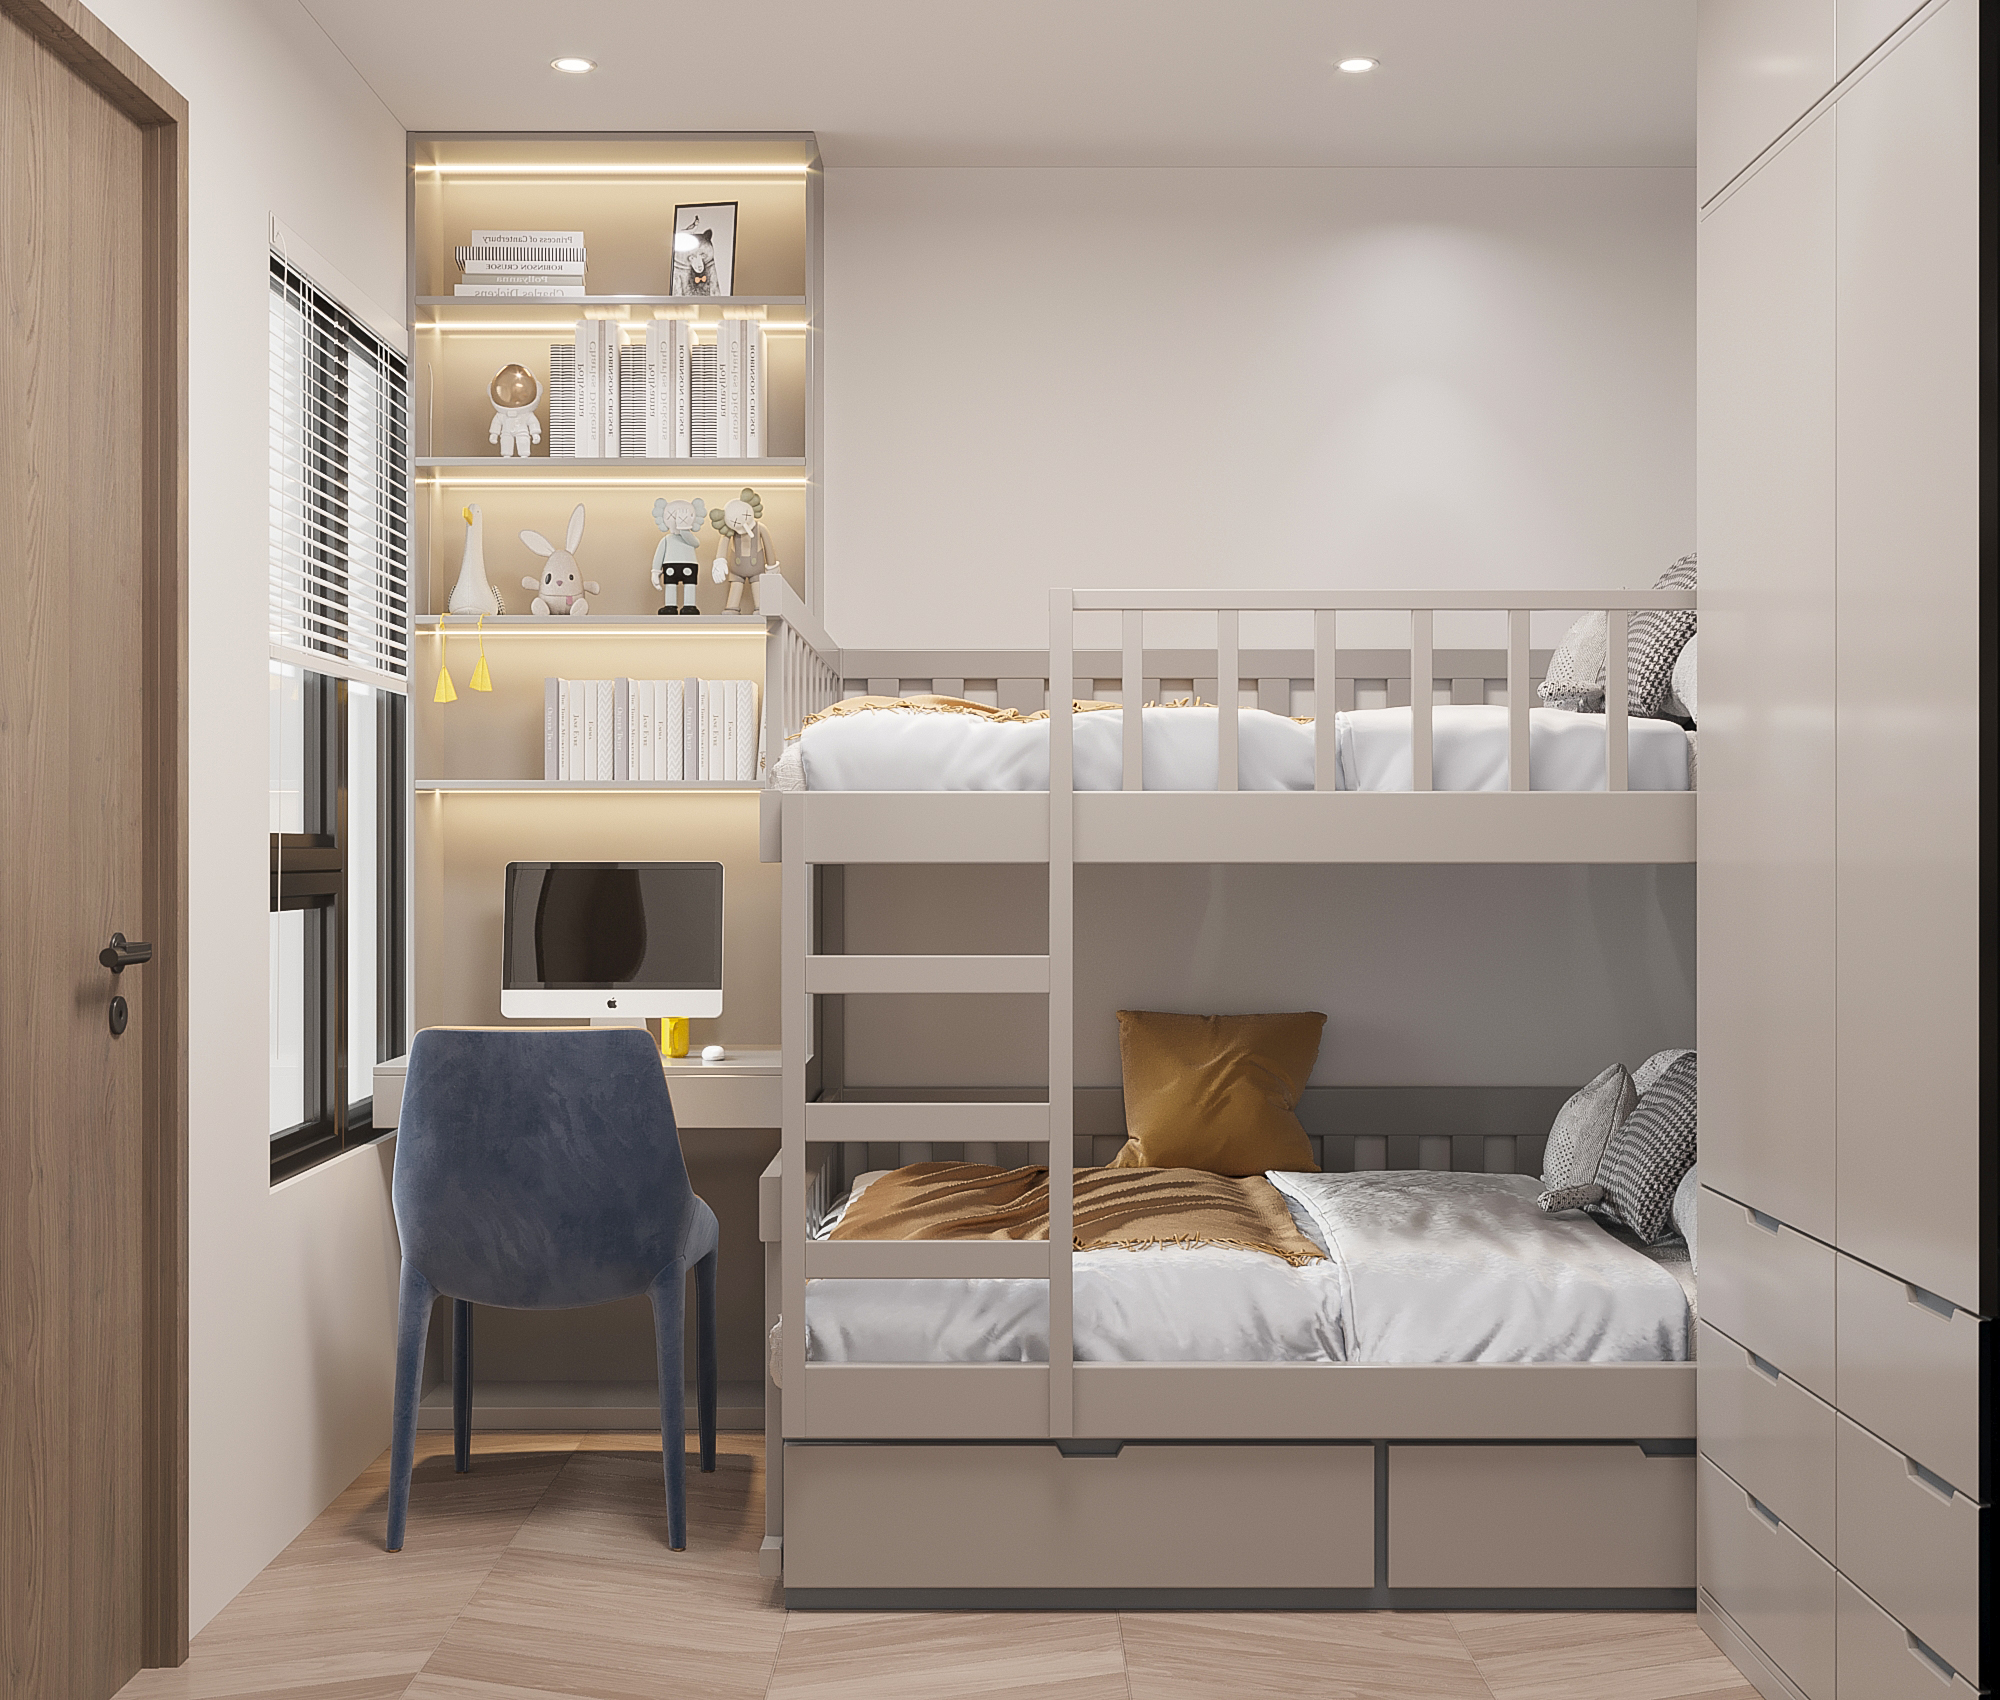 Với diện tích nhỏ hẹp, giường tầng là thiết kế tối ưu cho phòng ngủ chung của 2 em bé.